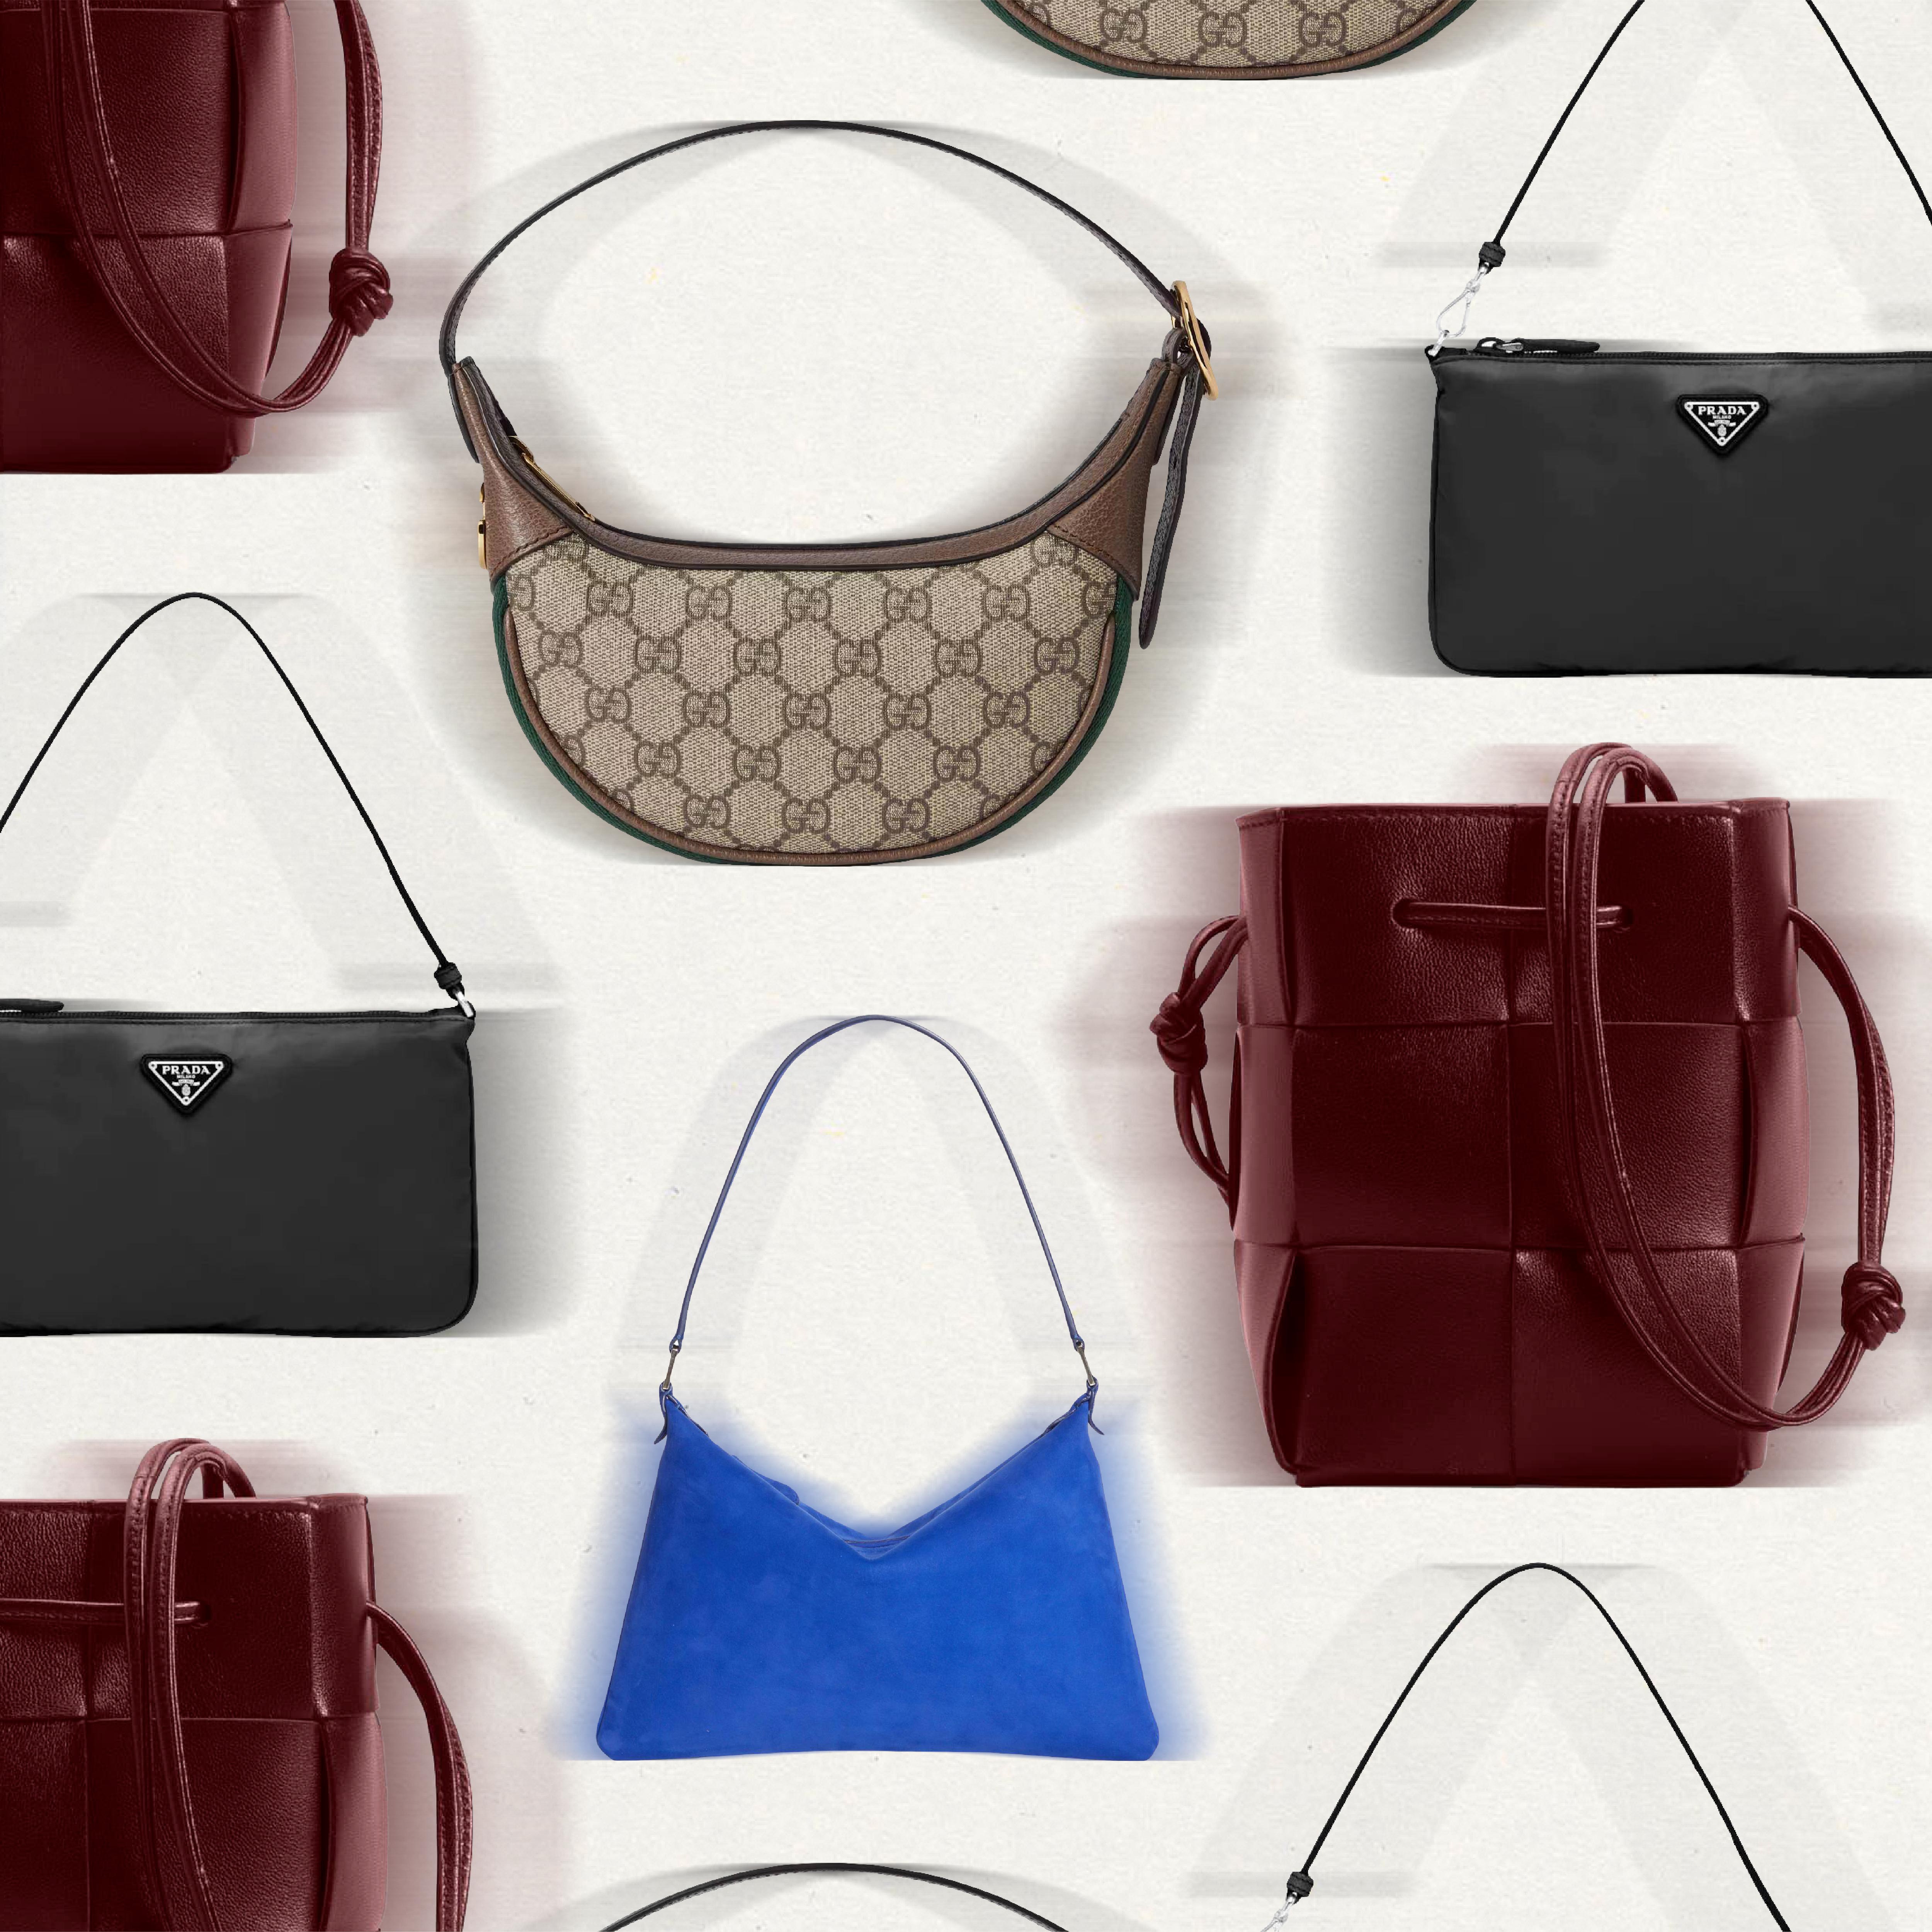 Prada Crossbody bag & Handbag  Buy or Sell your Designer Bags